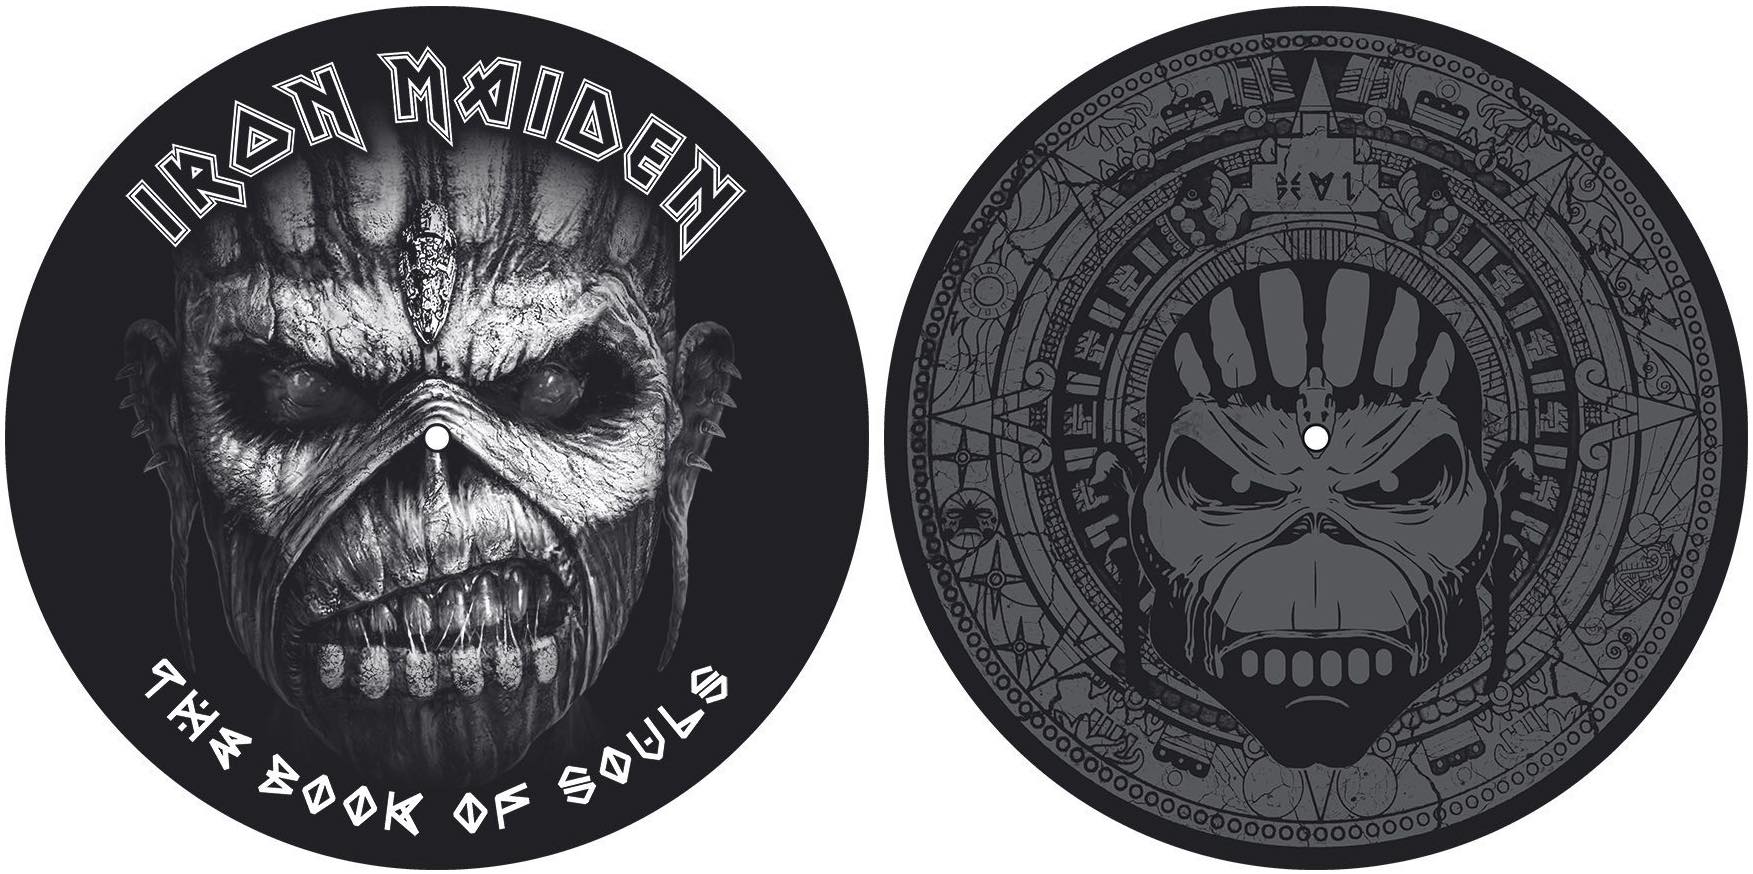 Фото № 1 Turntable Slipmats Iron Maiden (The Book Of Souls) - цены, наличие, отзывы в интернет-магазине